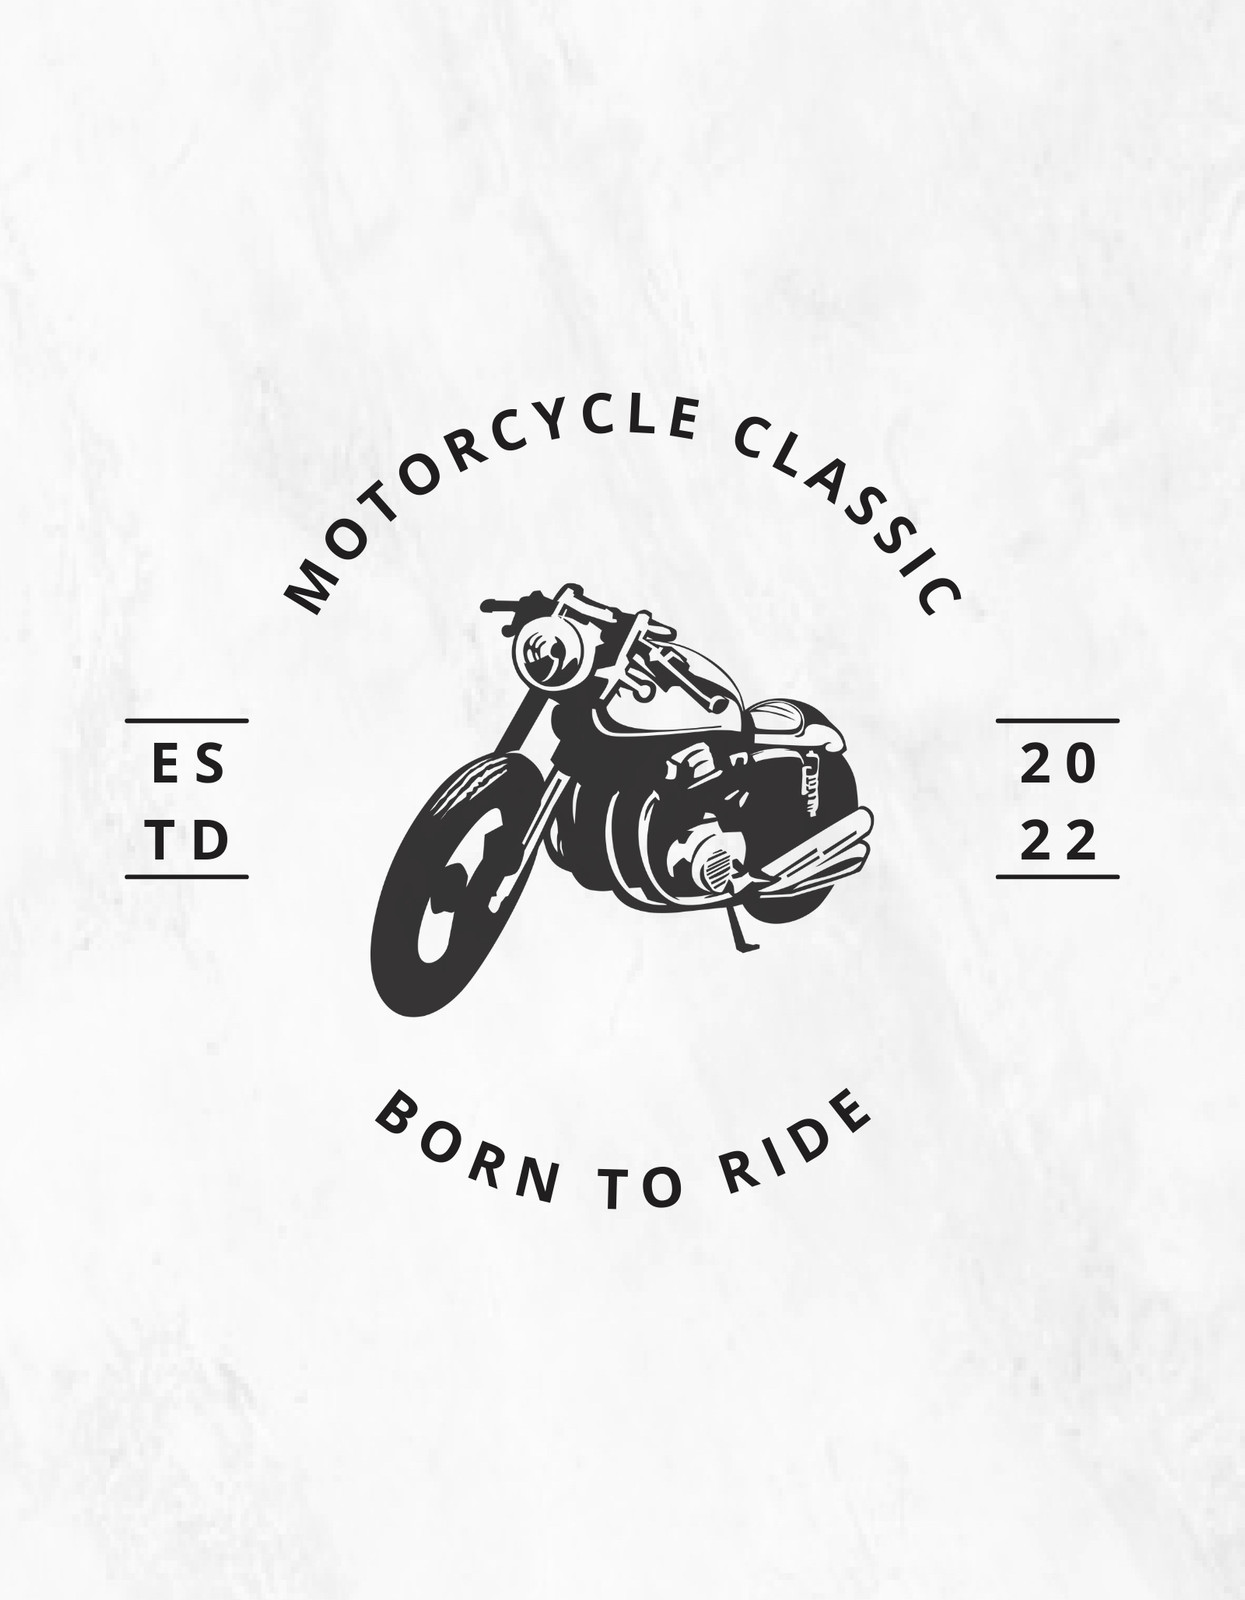 Premium Vector, Rider motocross set logo designs